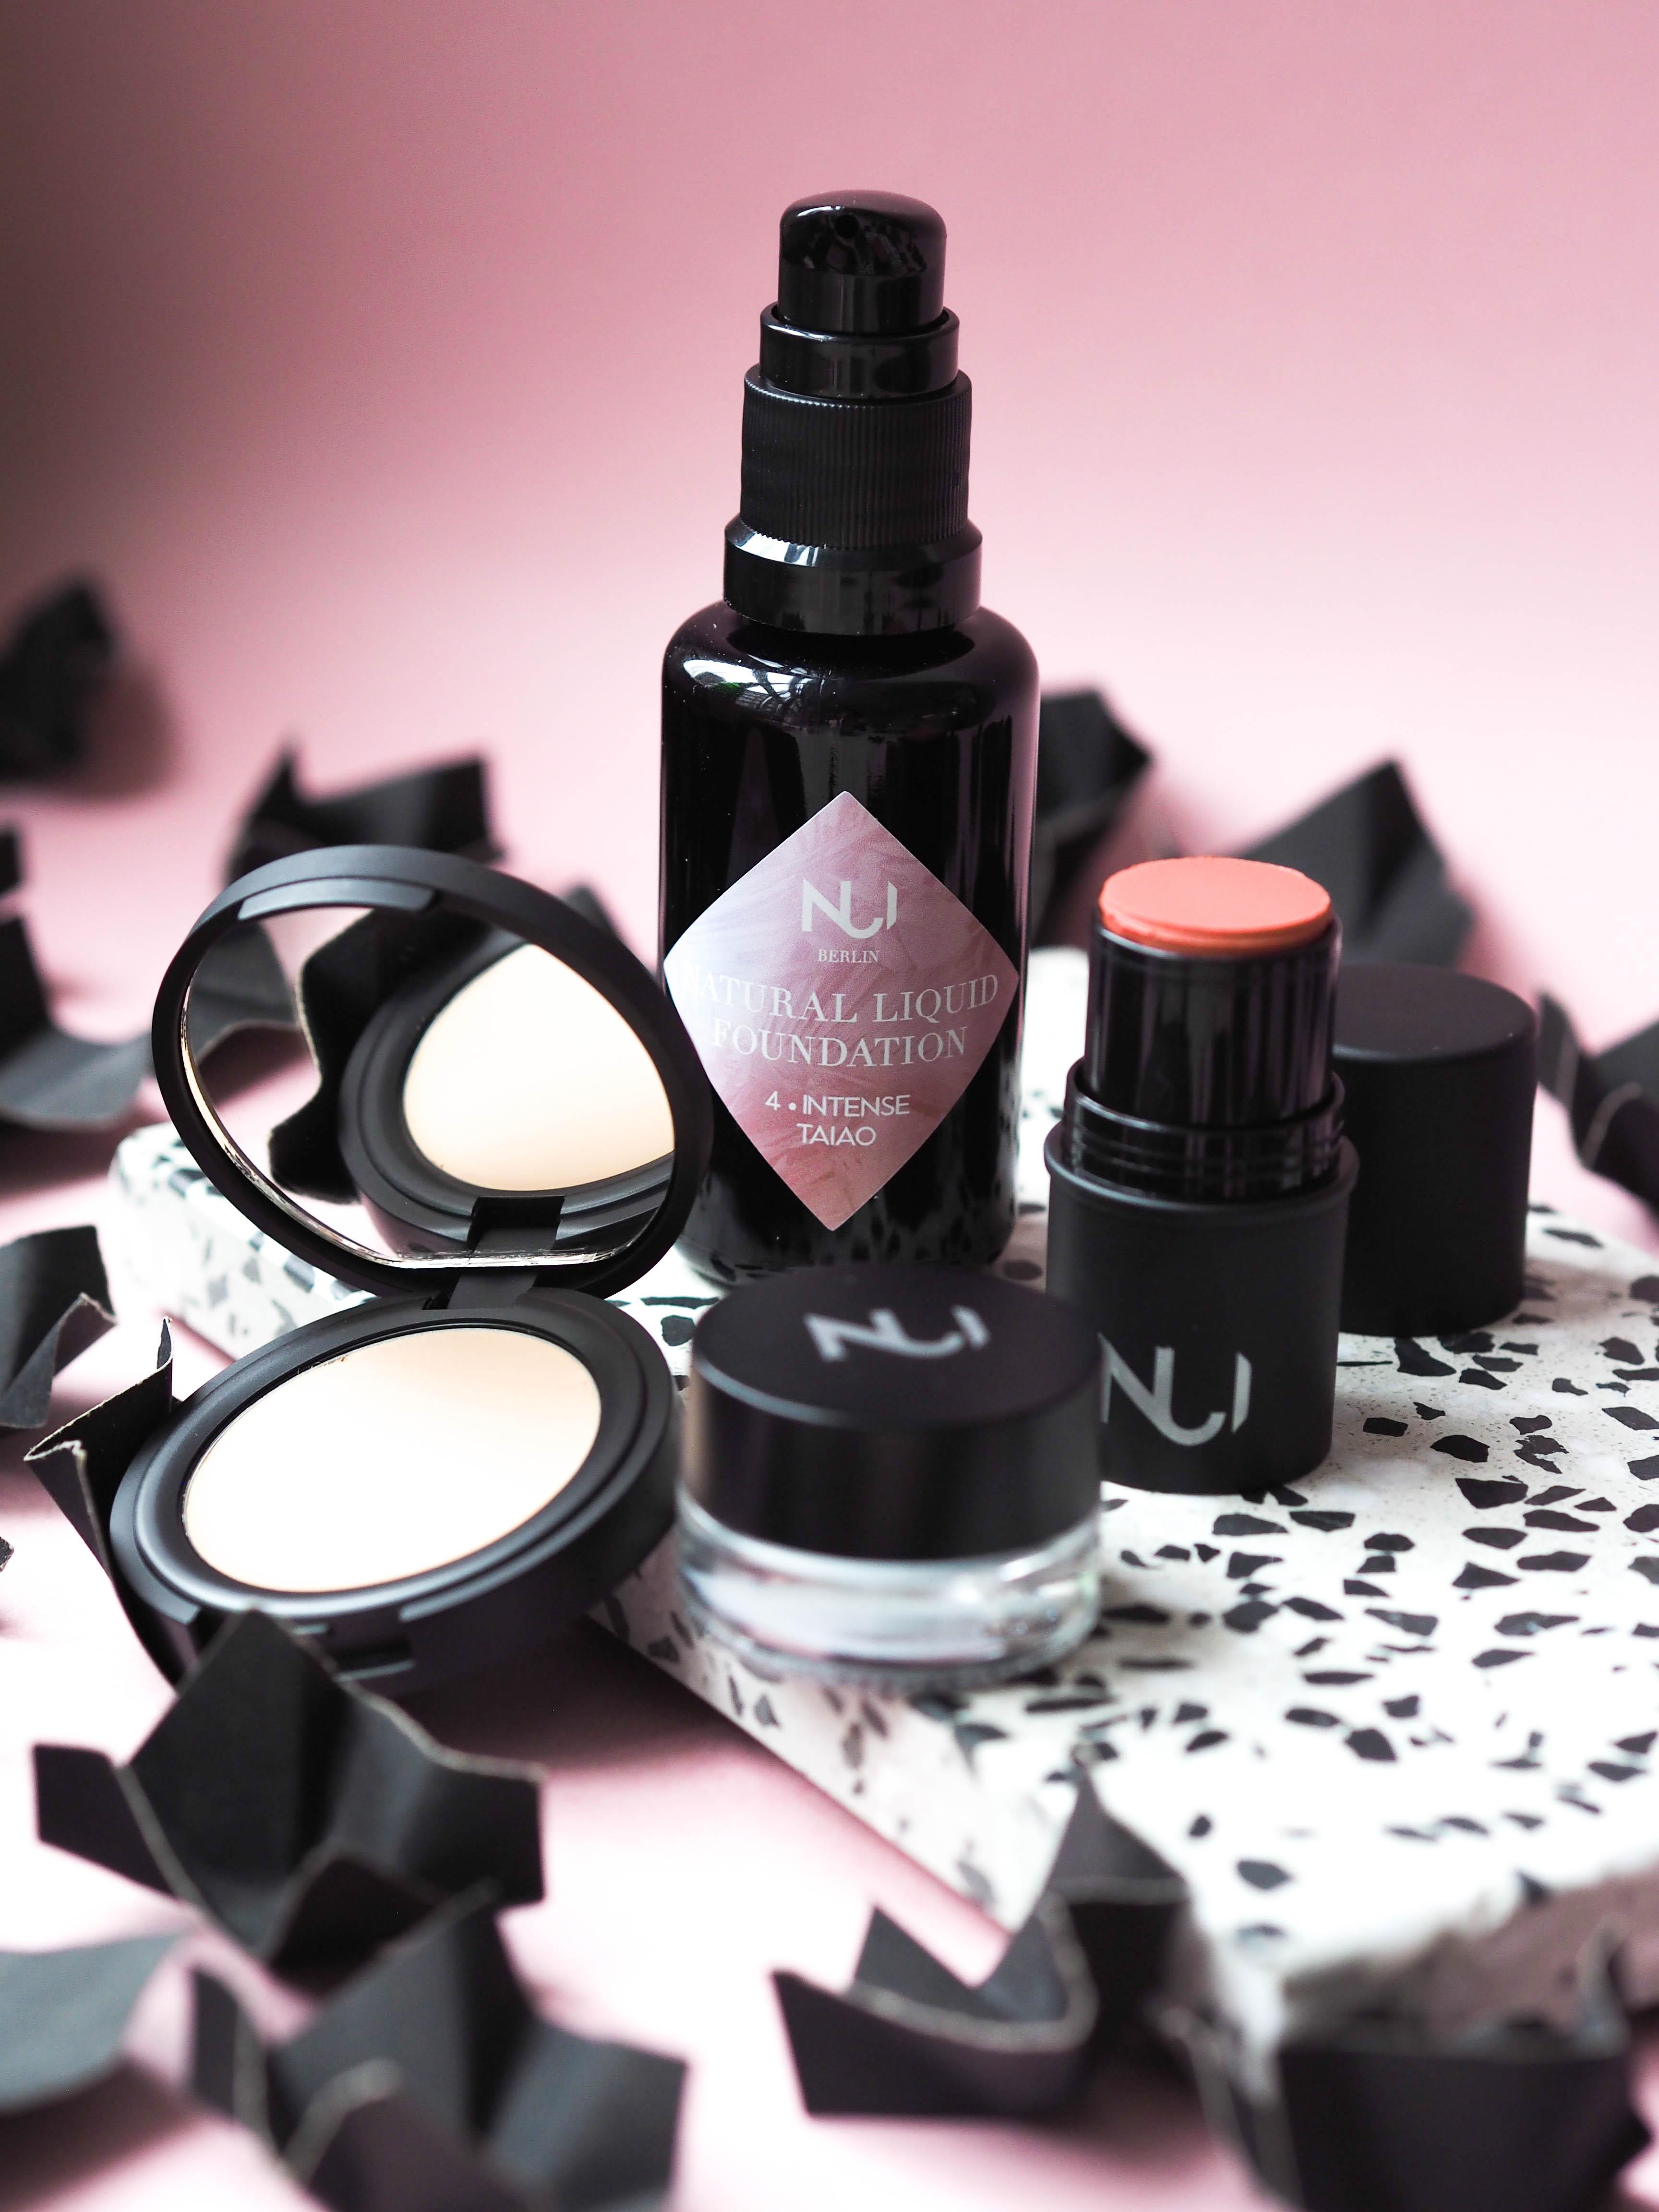 Pflegendes Make-up, das Haut und Planeten schützt: Swantje hat zudem Nui Cosmetics gegründet. #beautylieblinge